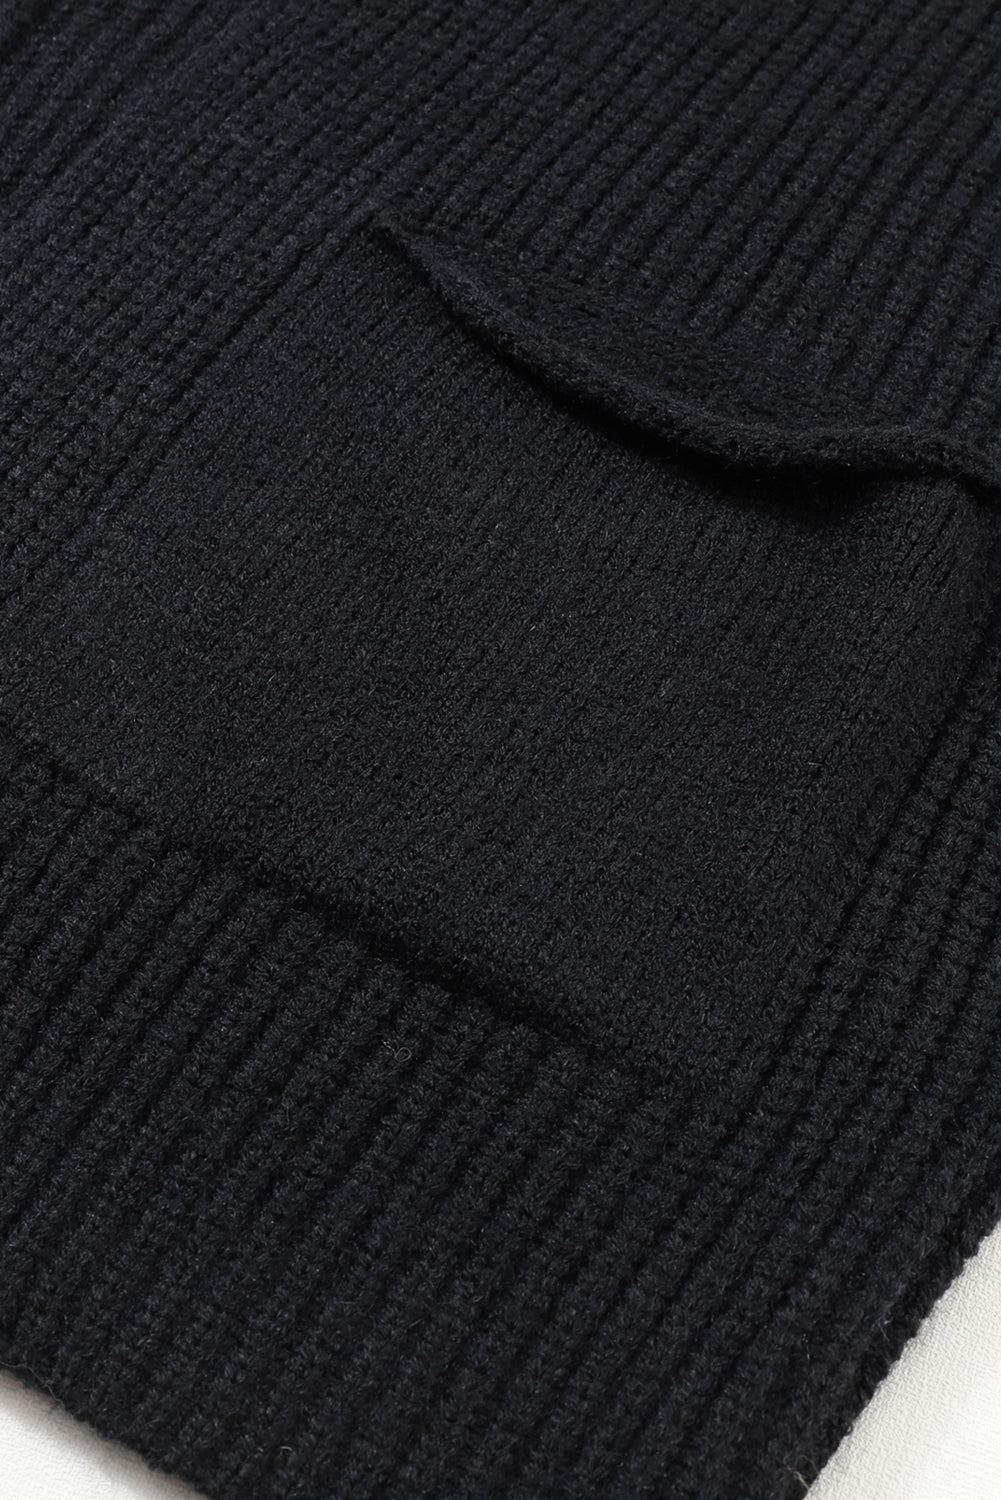 Crni preveliki džemper na preklop preko rukava